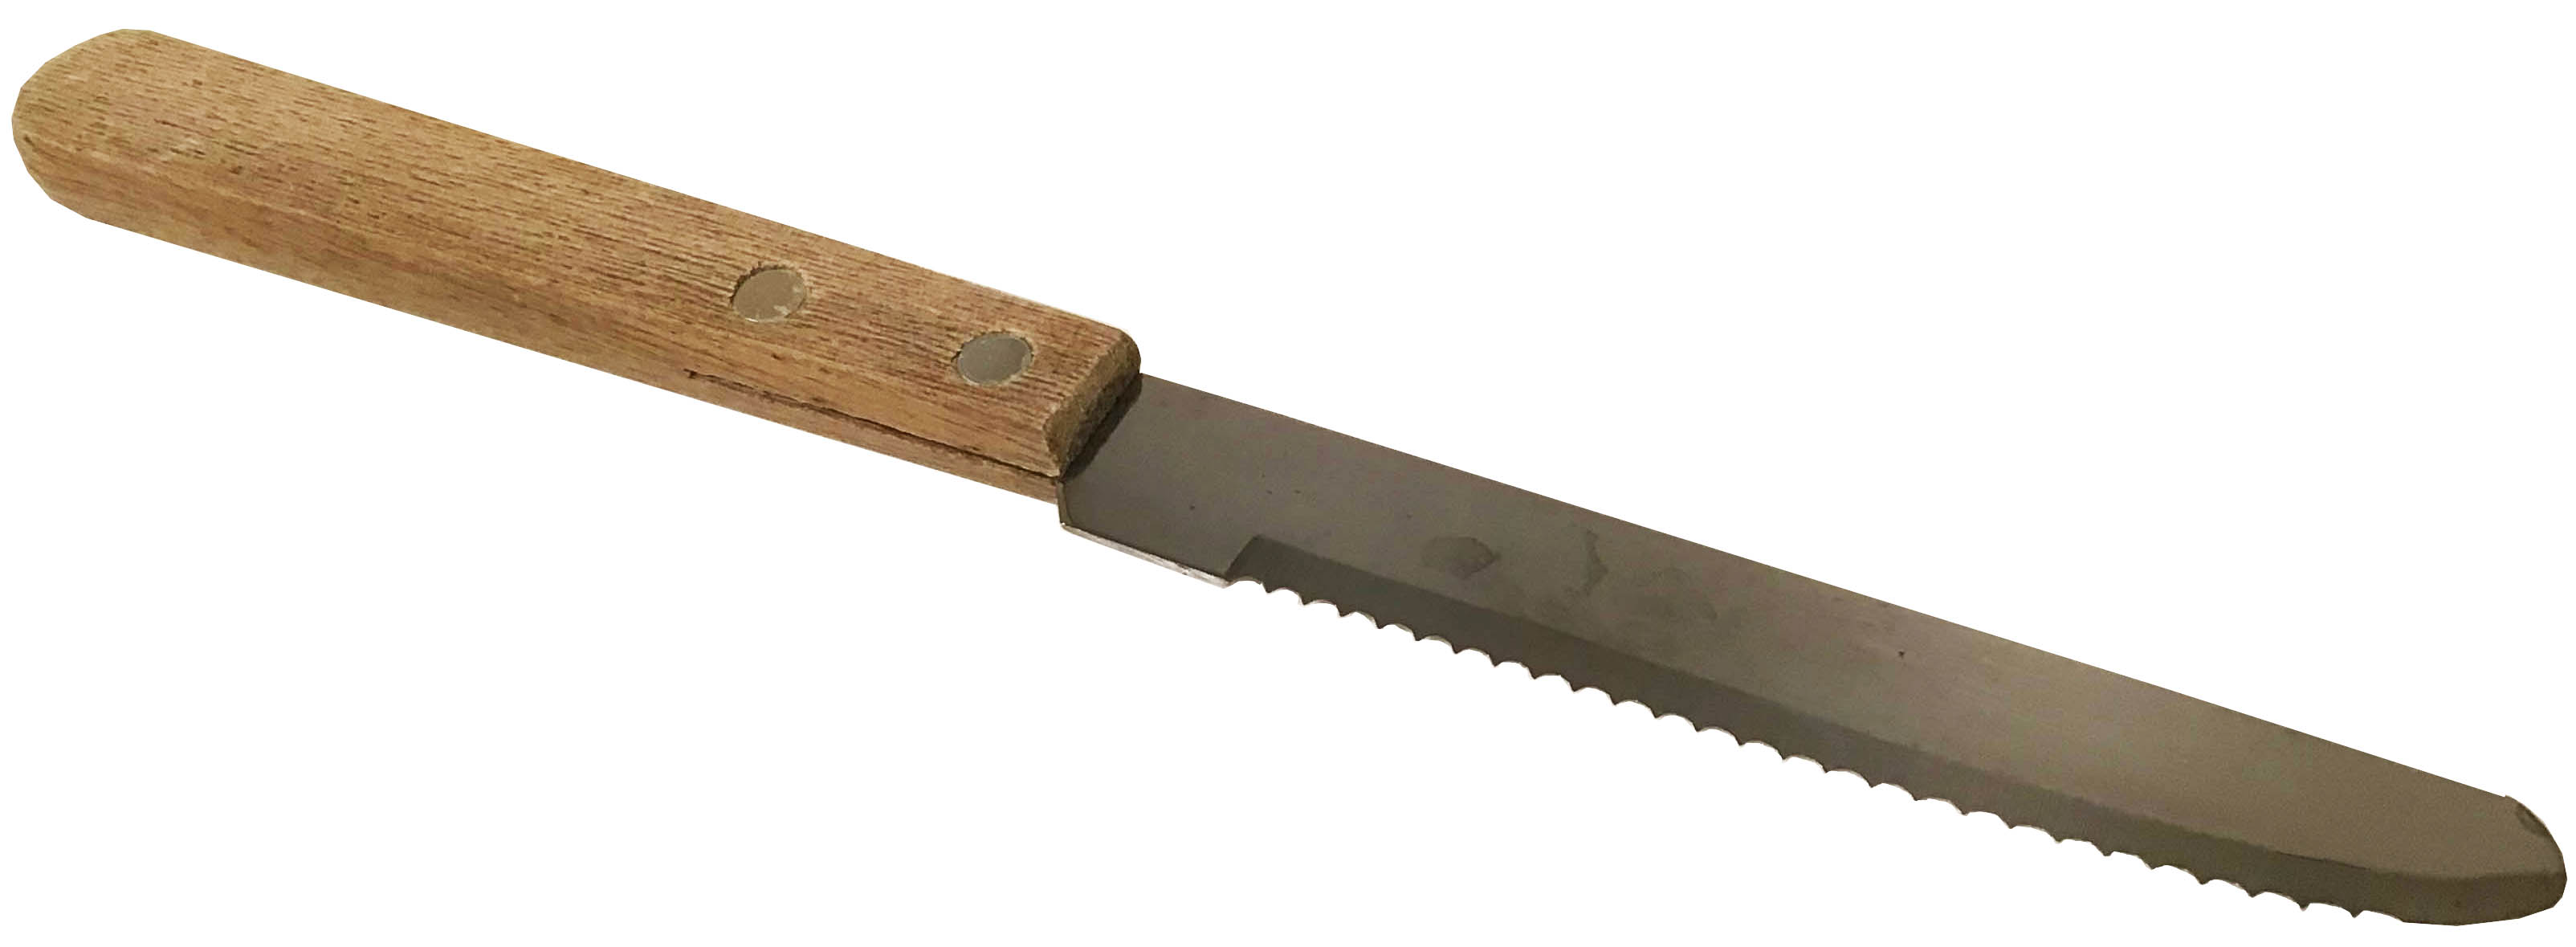 steak knives (rounded tip)